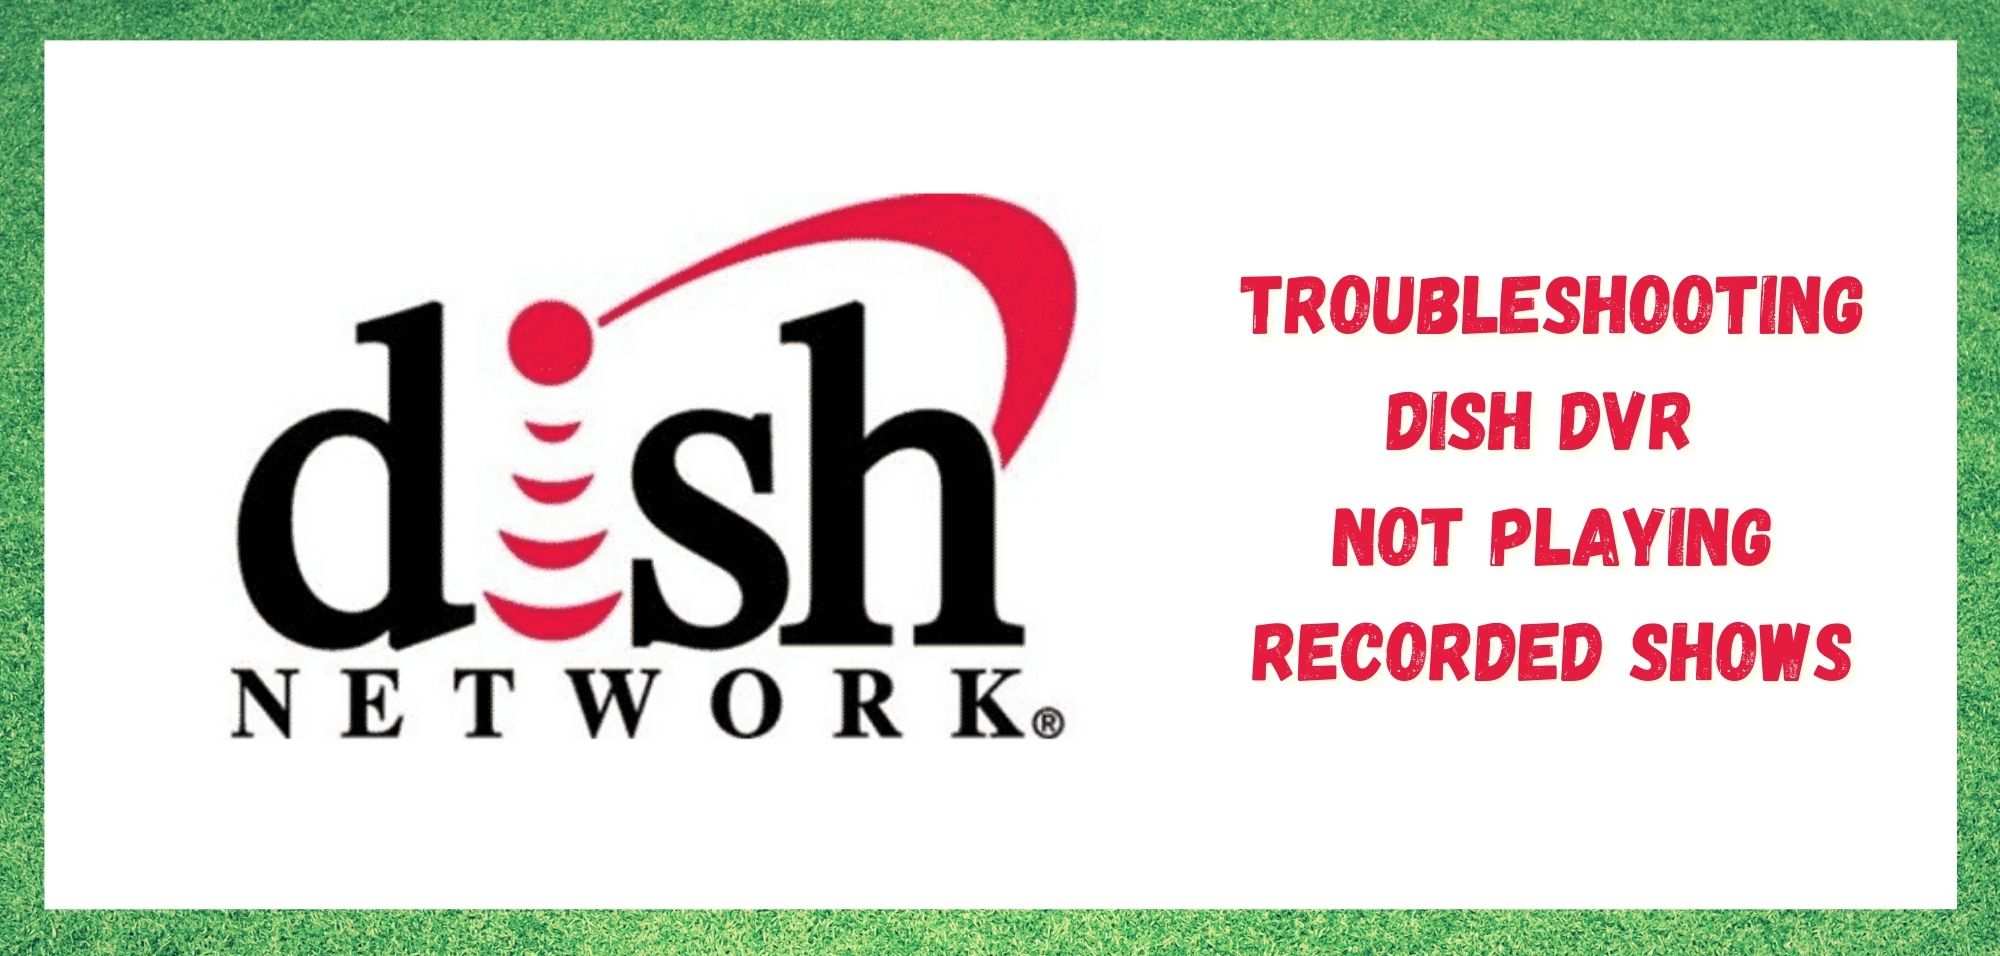 Dish DVR spielet net opnommen shows: 3 manieren om te reparearjen